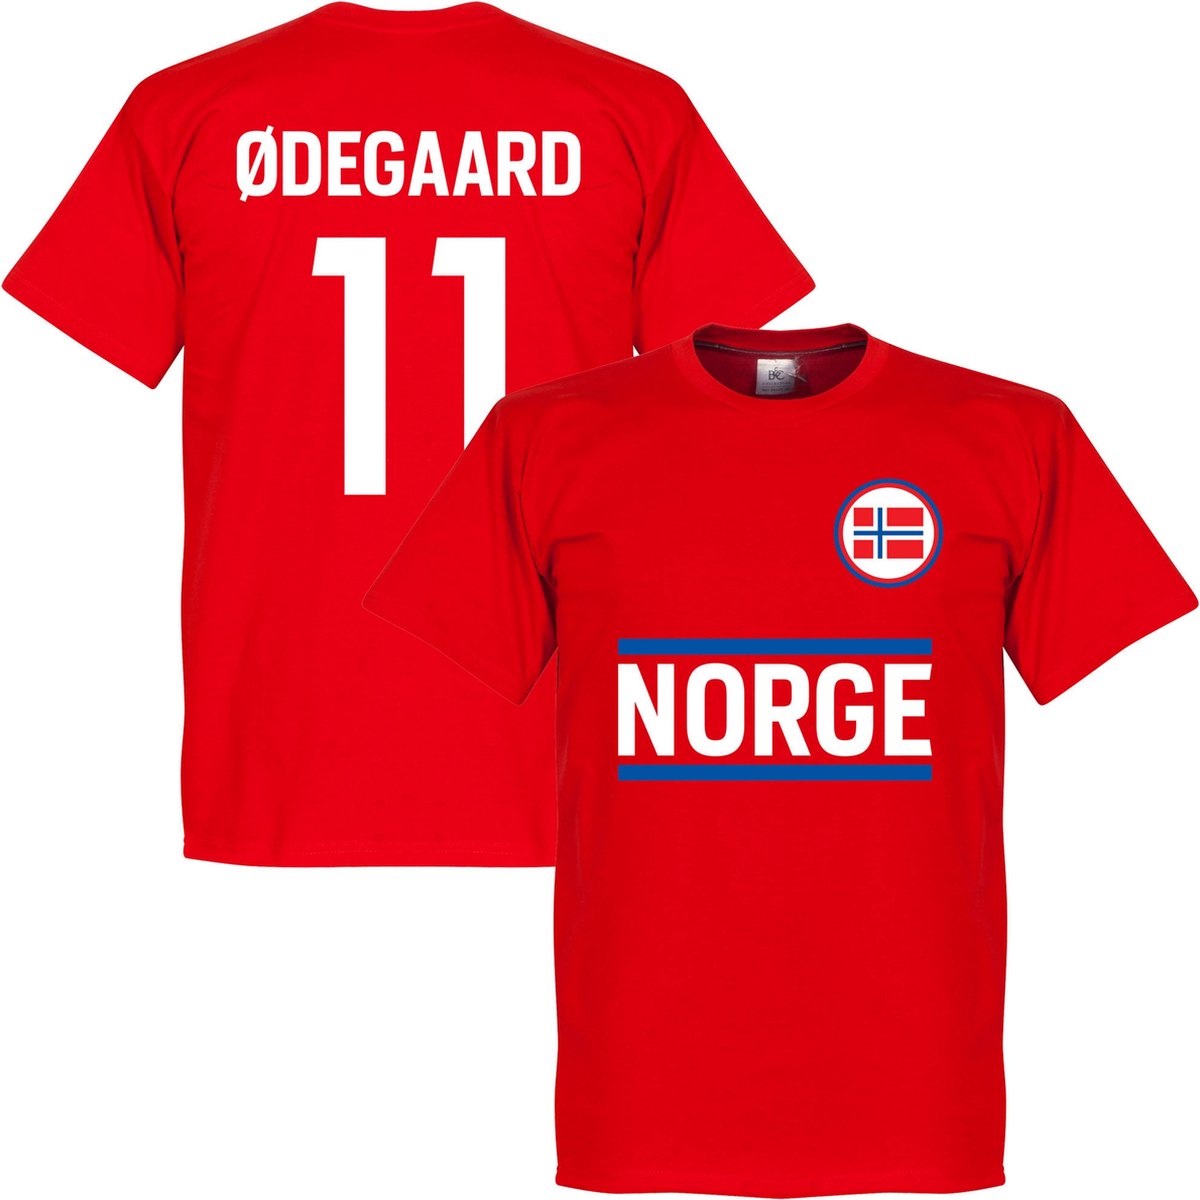 Noorwegen Ödegaard 11 T-Shirt - S